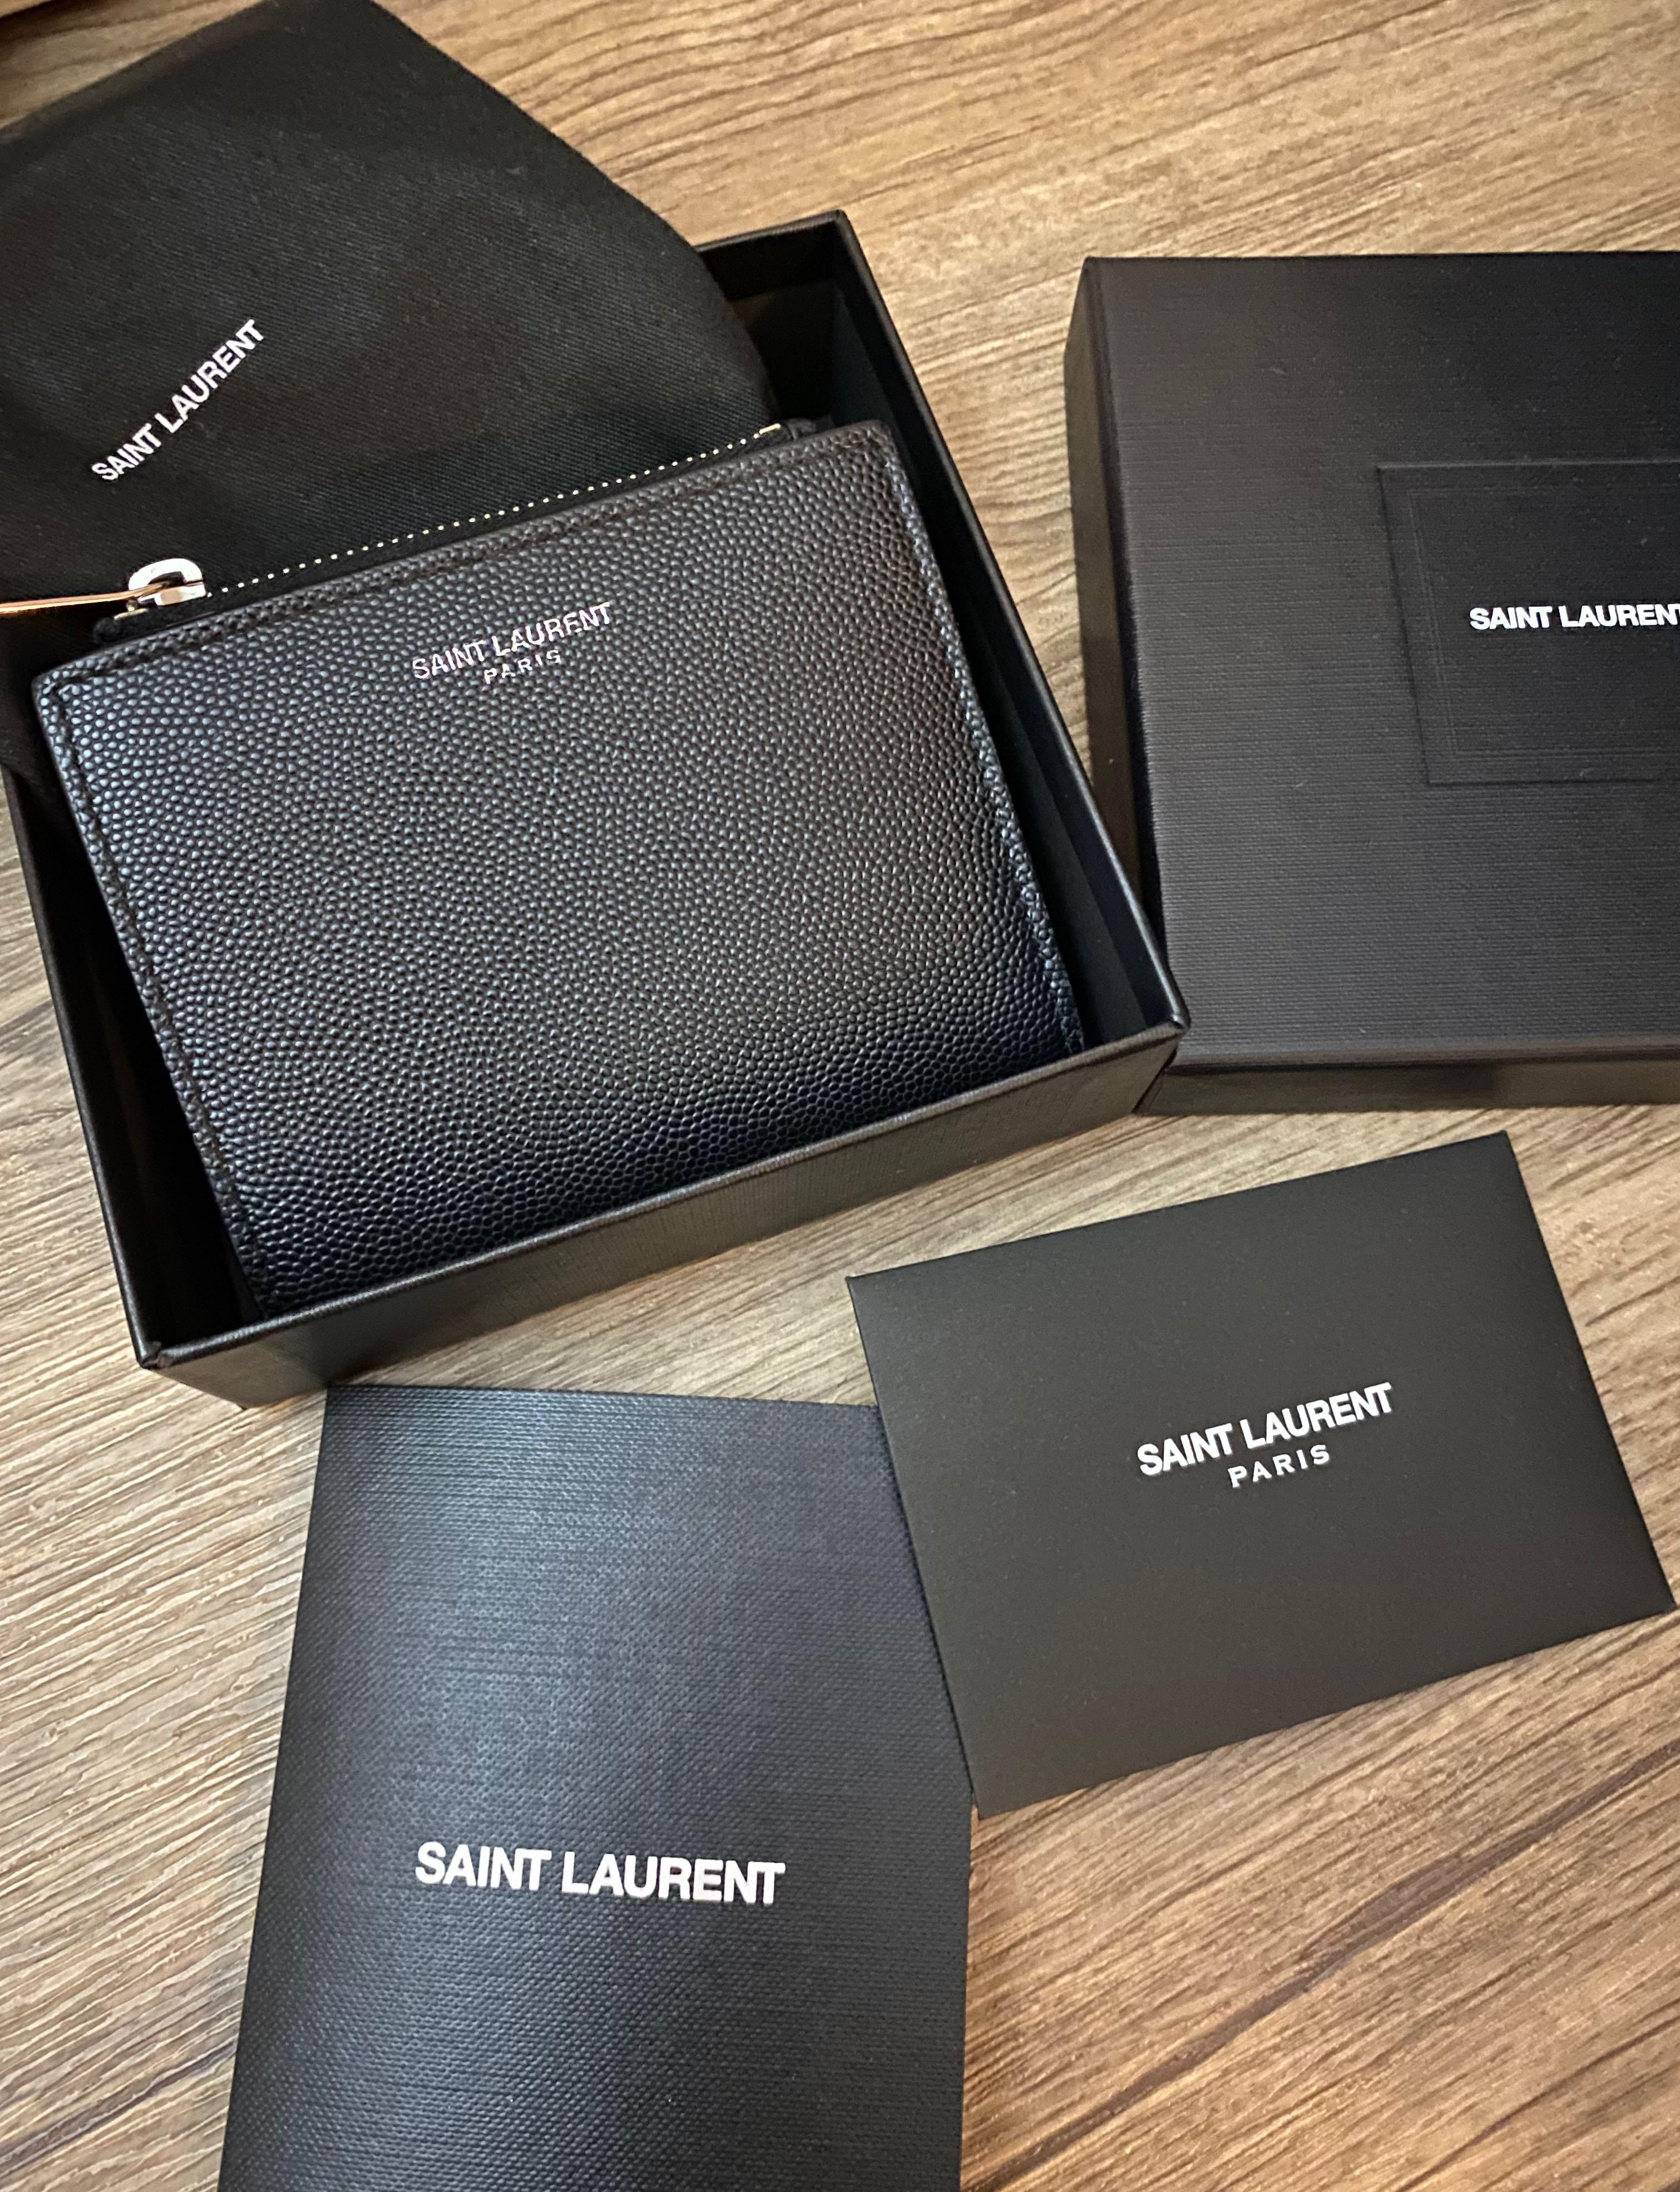 Saint Laurent Paris Credit Card Case in Grain de Poudre Embossed